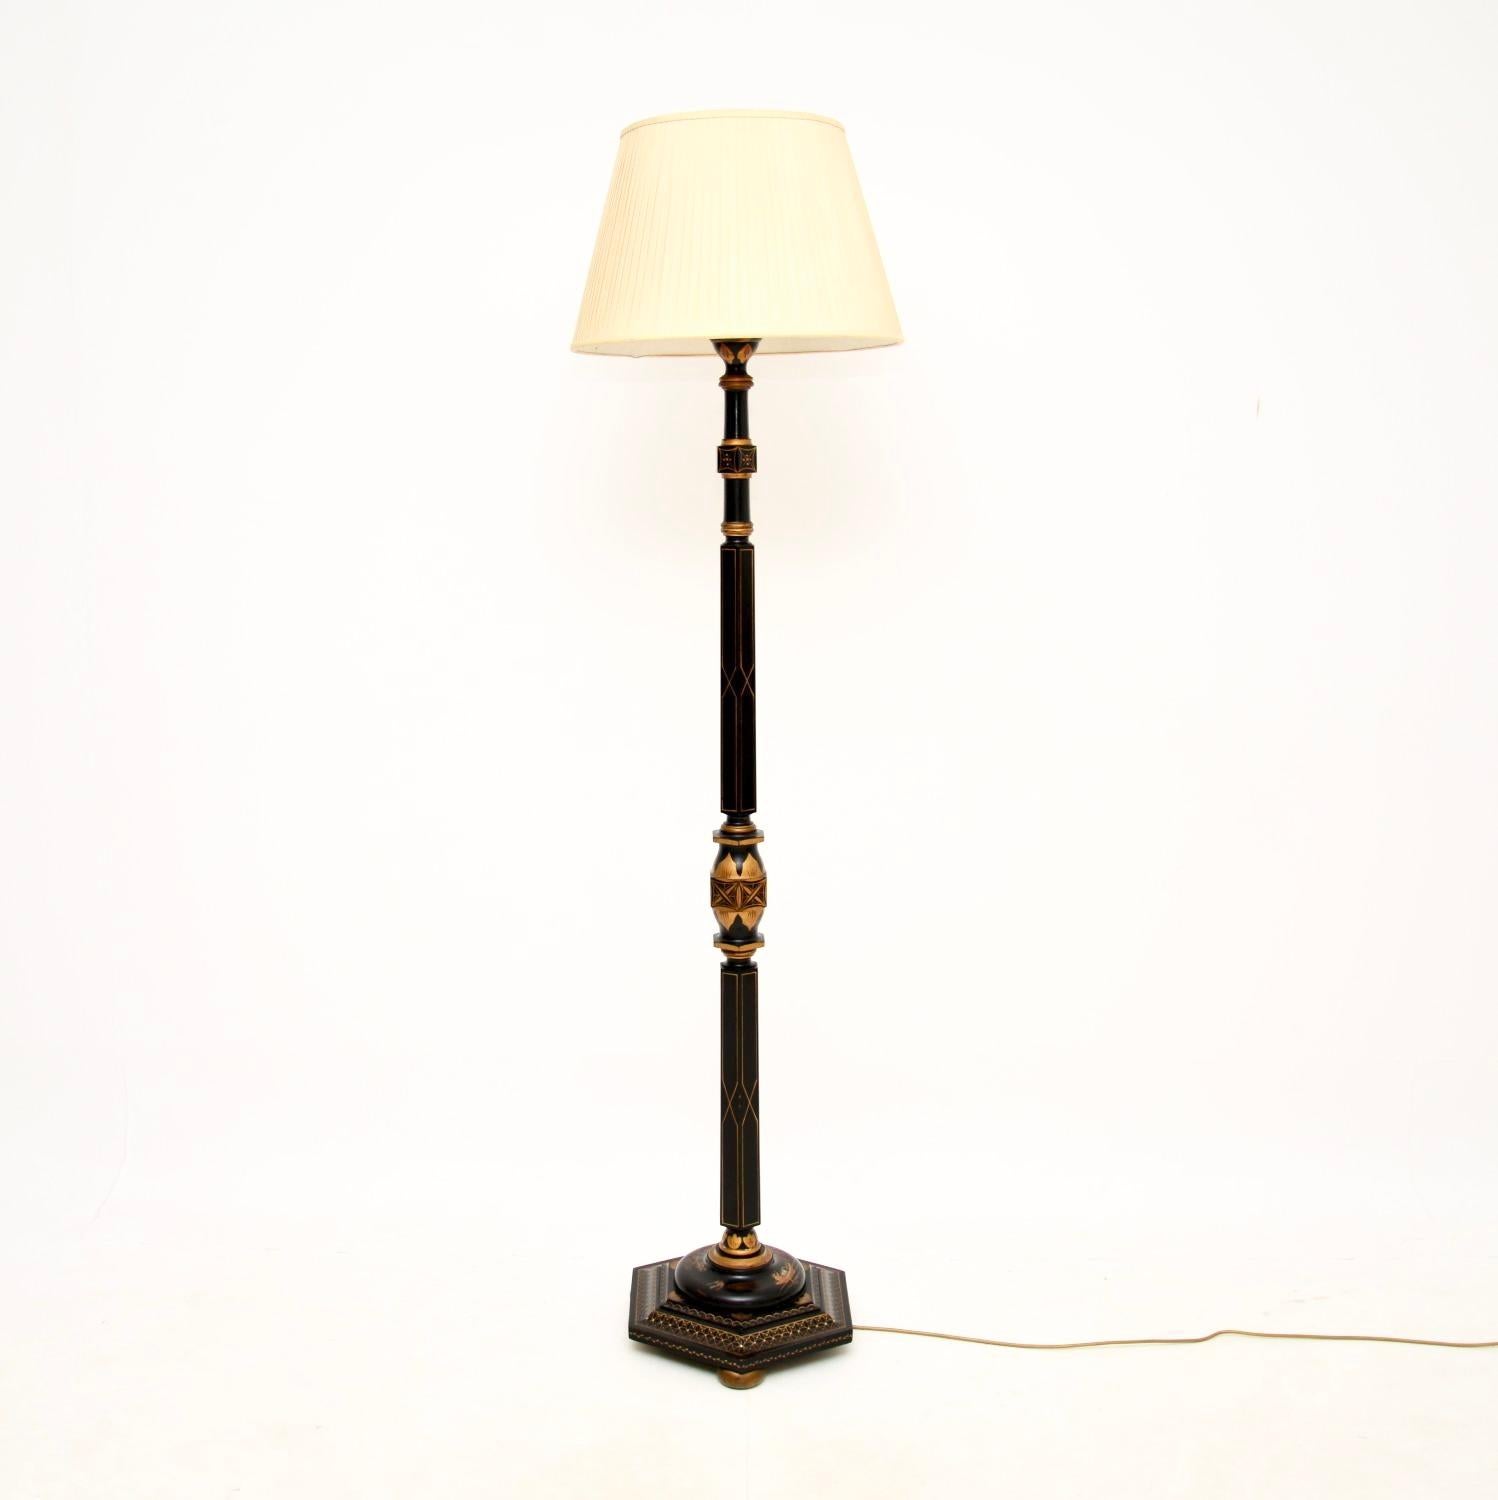 Un superbe lampadaire antique en chinoiserie laquée, fabriqué en Angleterre et datant des années 1920.

Il s'agit d'un objet d'une qualité exceptionnelle avec de magnifiques décorations peintes et laquées dans le style oriental. Le cadre en bois